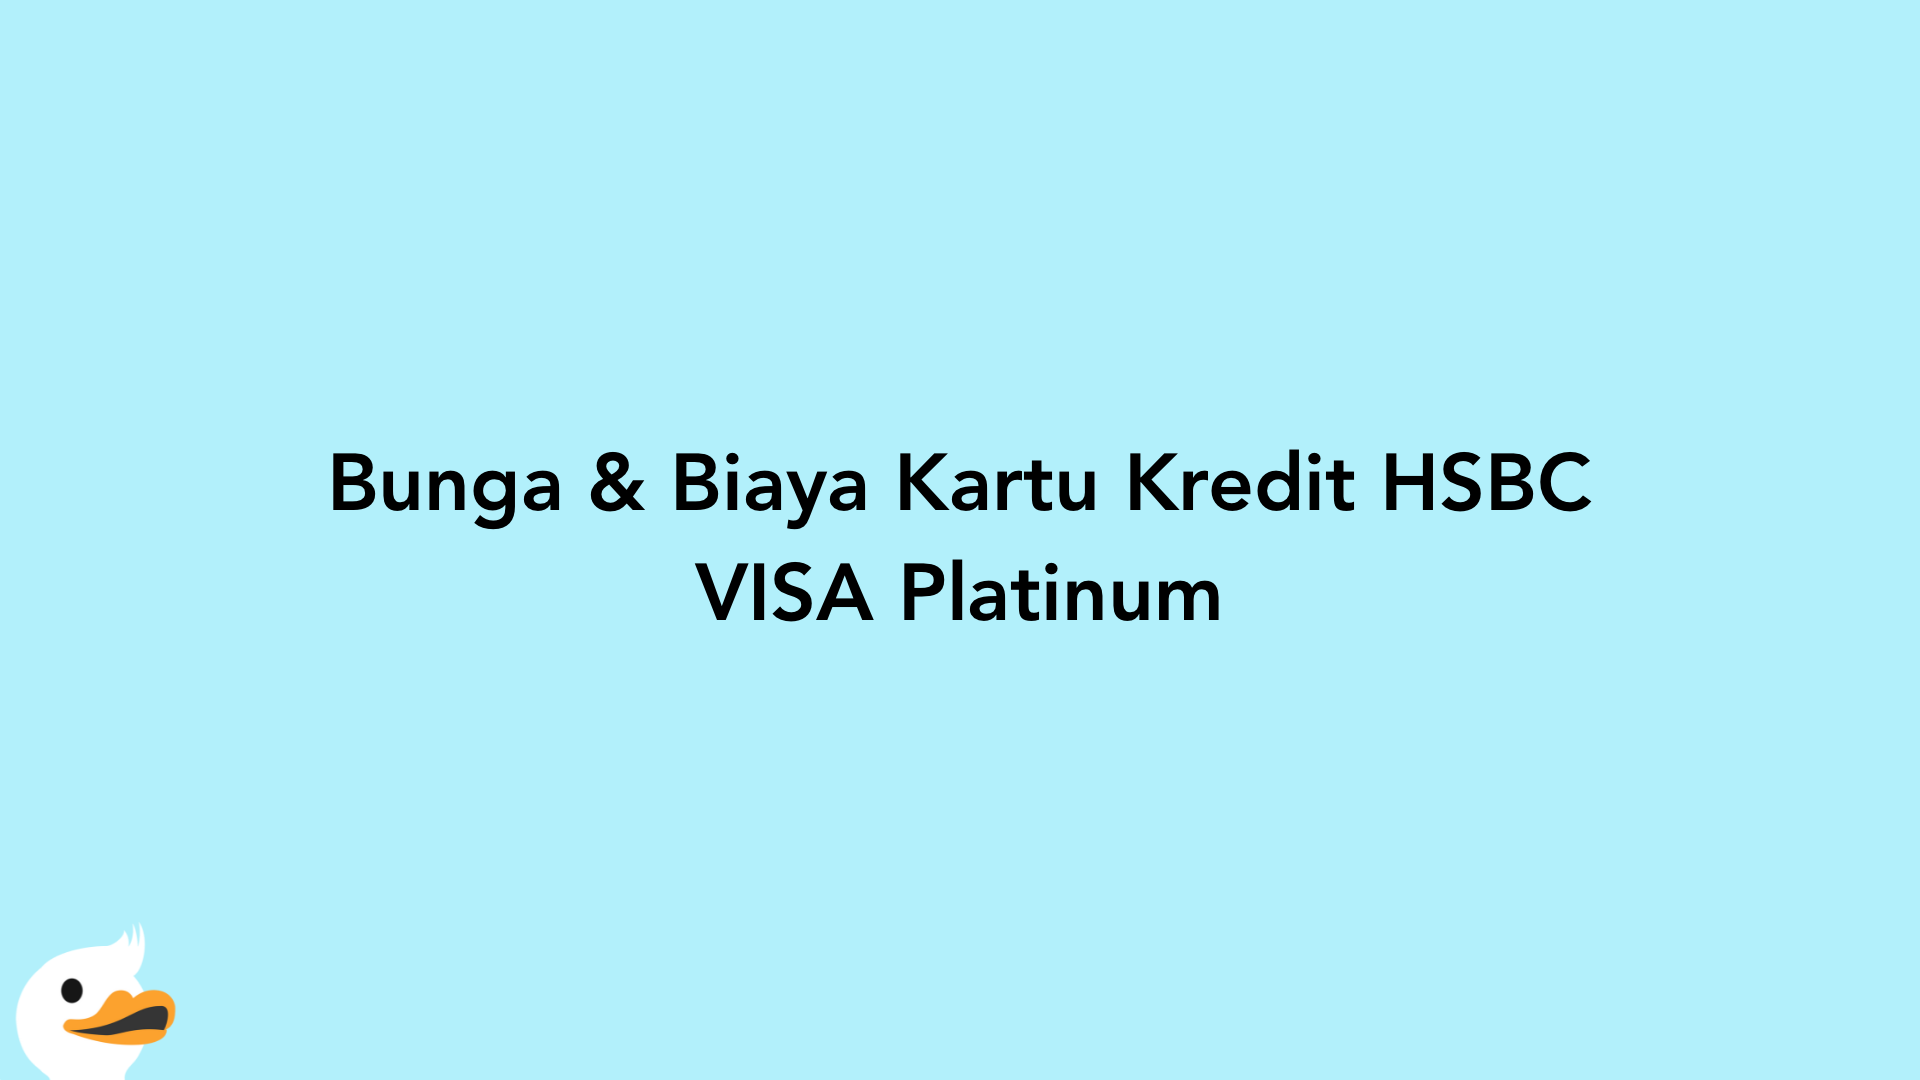 Bunga & Biaya Kartu Kredit HSBC VISA Platinum